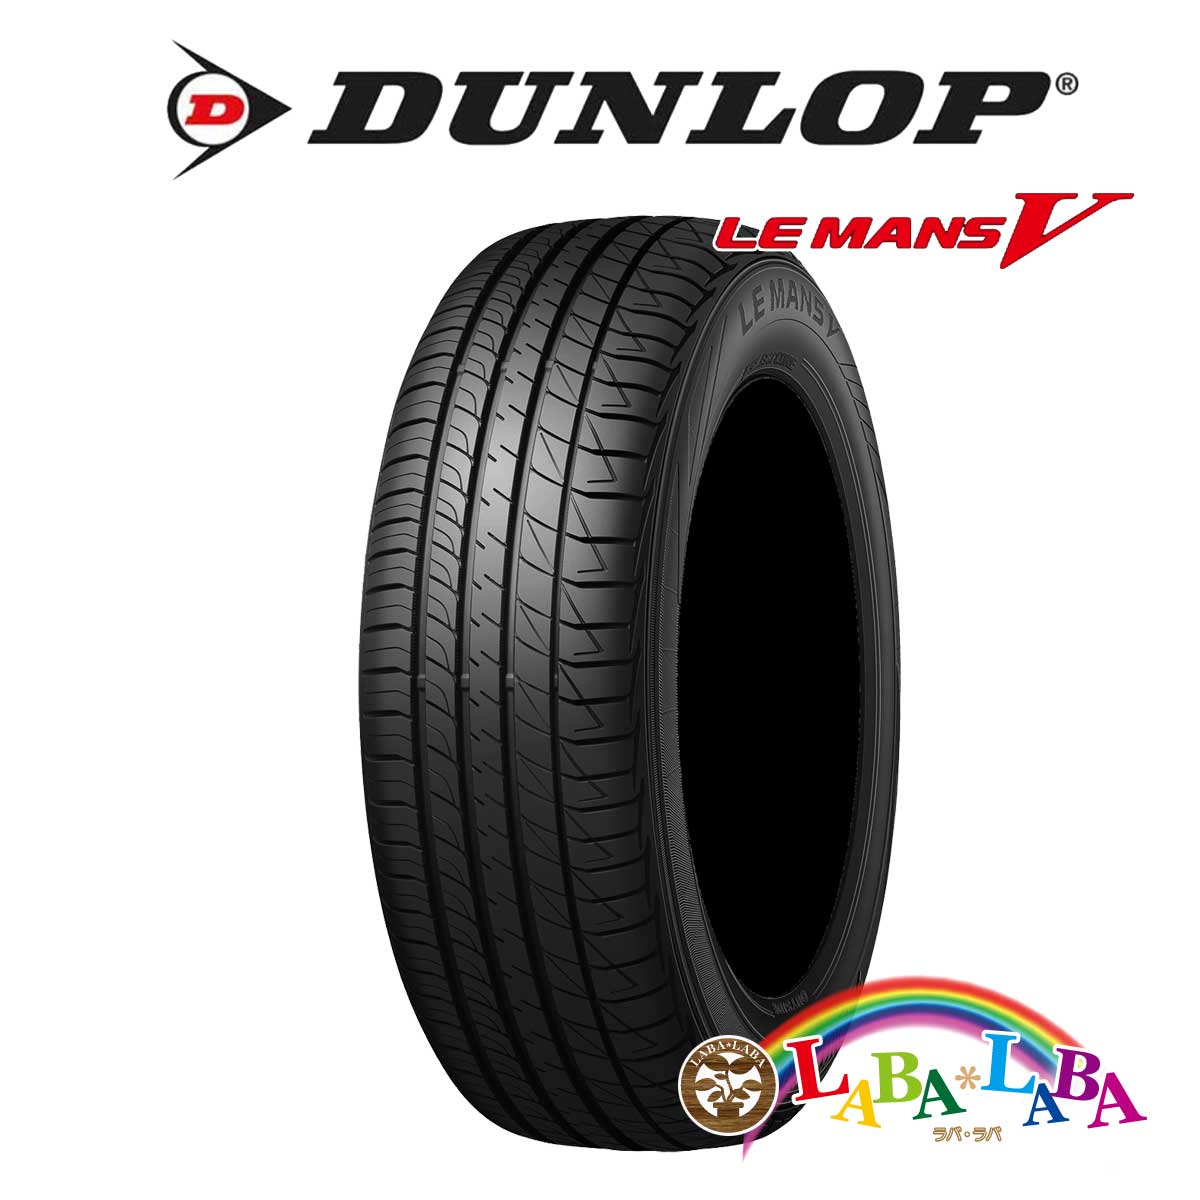 ２本以上送料無料 国産タイヤ サマータイヤ 新品 タイヤのみ DUNLOP ダンロップ 65R16 MANSV 売れ筋ランキングも LE 205 クリアランスsale!期間限定! 95H ルマン LM5